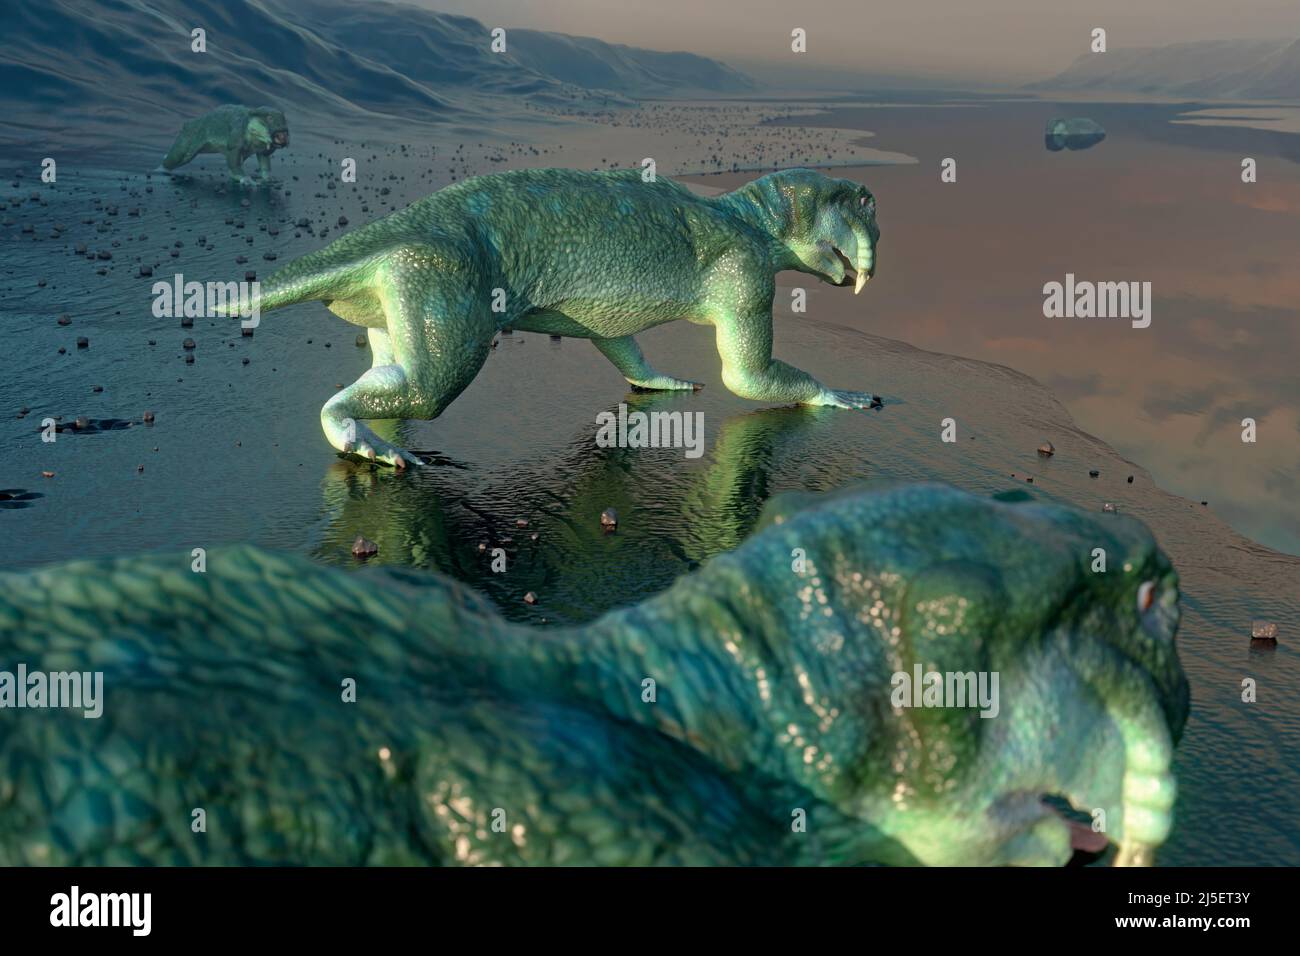 Opere d'arte di Listrosaurus animale estinto Foto Stock